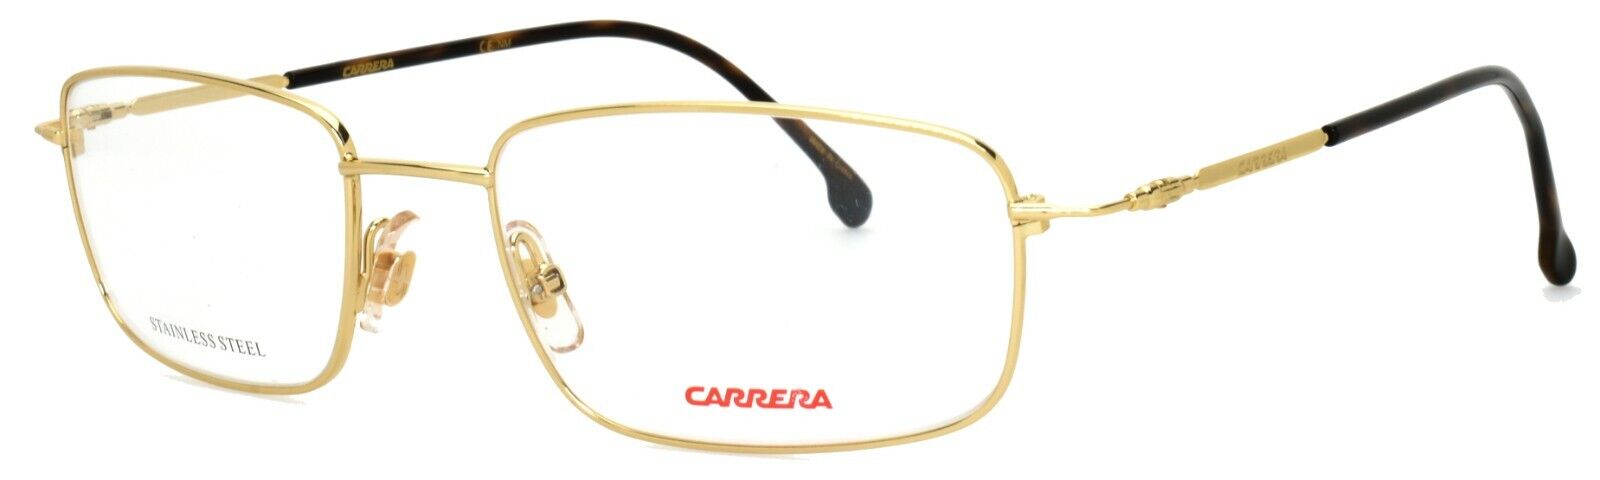 Carrera Rx Eyeglasses Gold 146-V J5G 53-18-140 Brand New